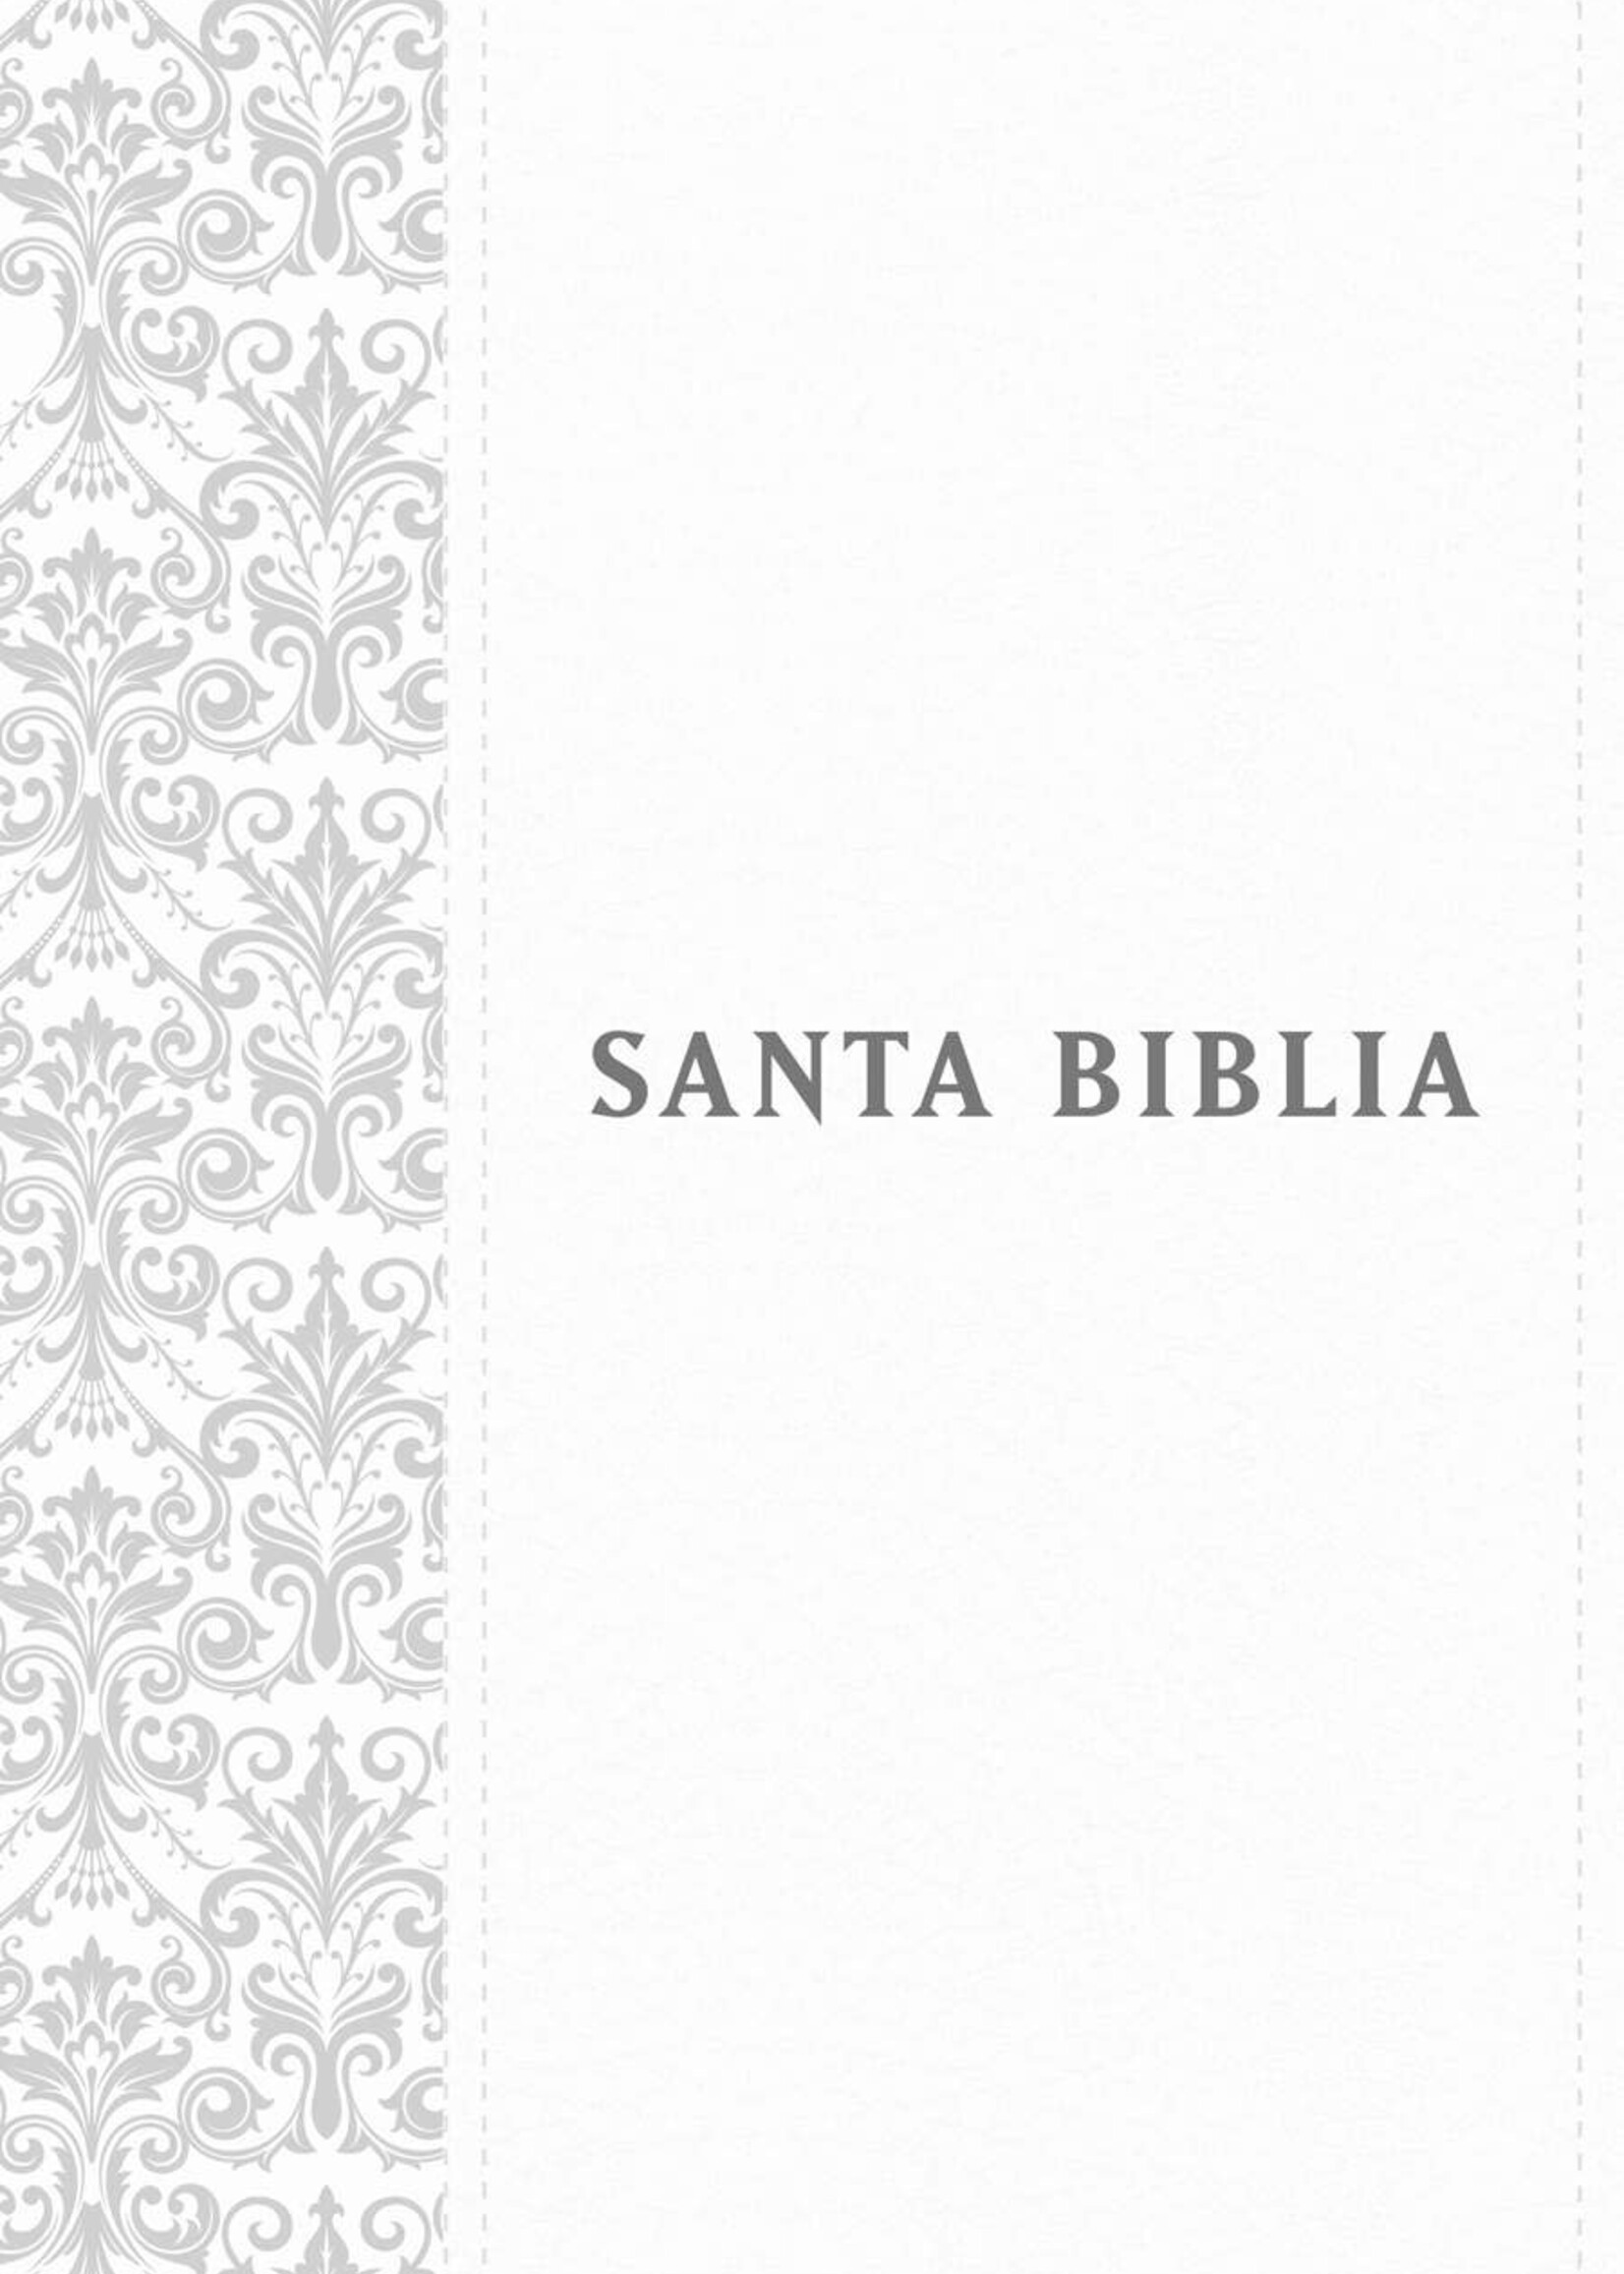 TYNDALE ESPANOL Santa Biblia NTV, Edición personal, letra grande, blanca, indice